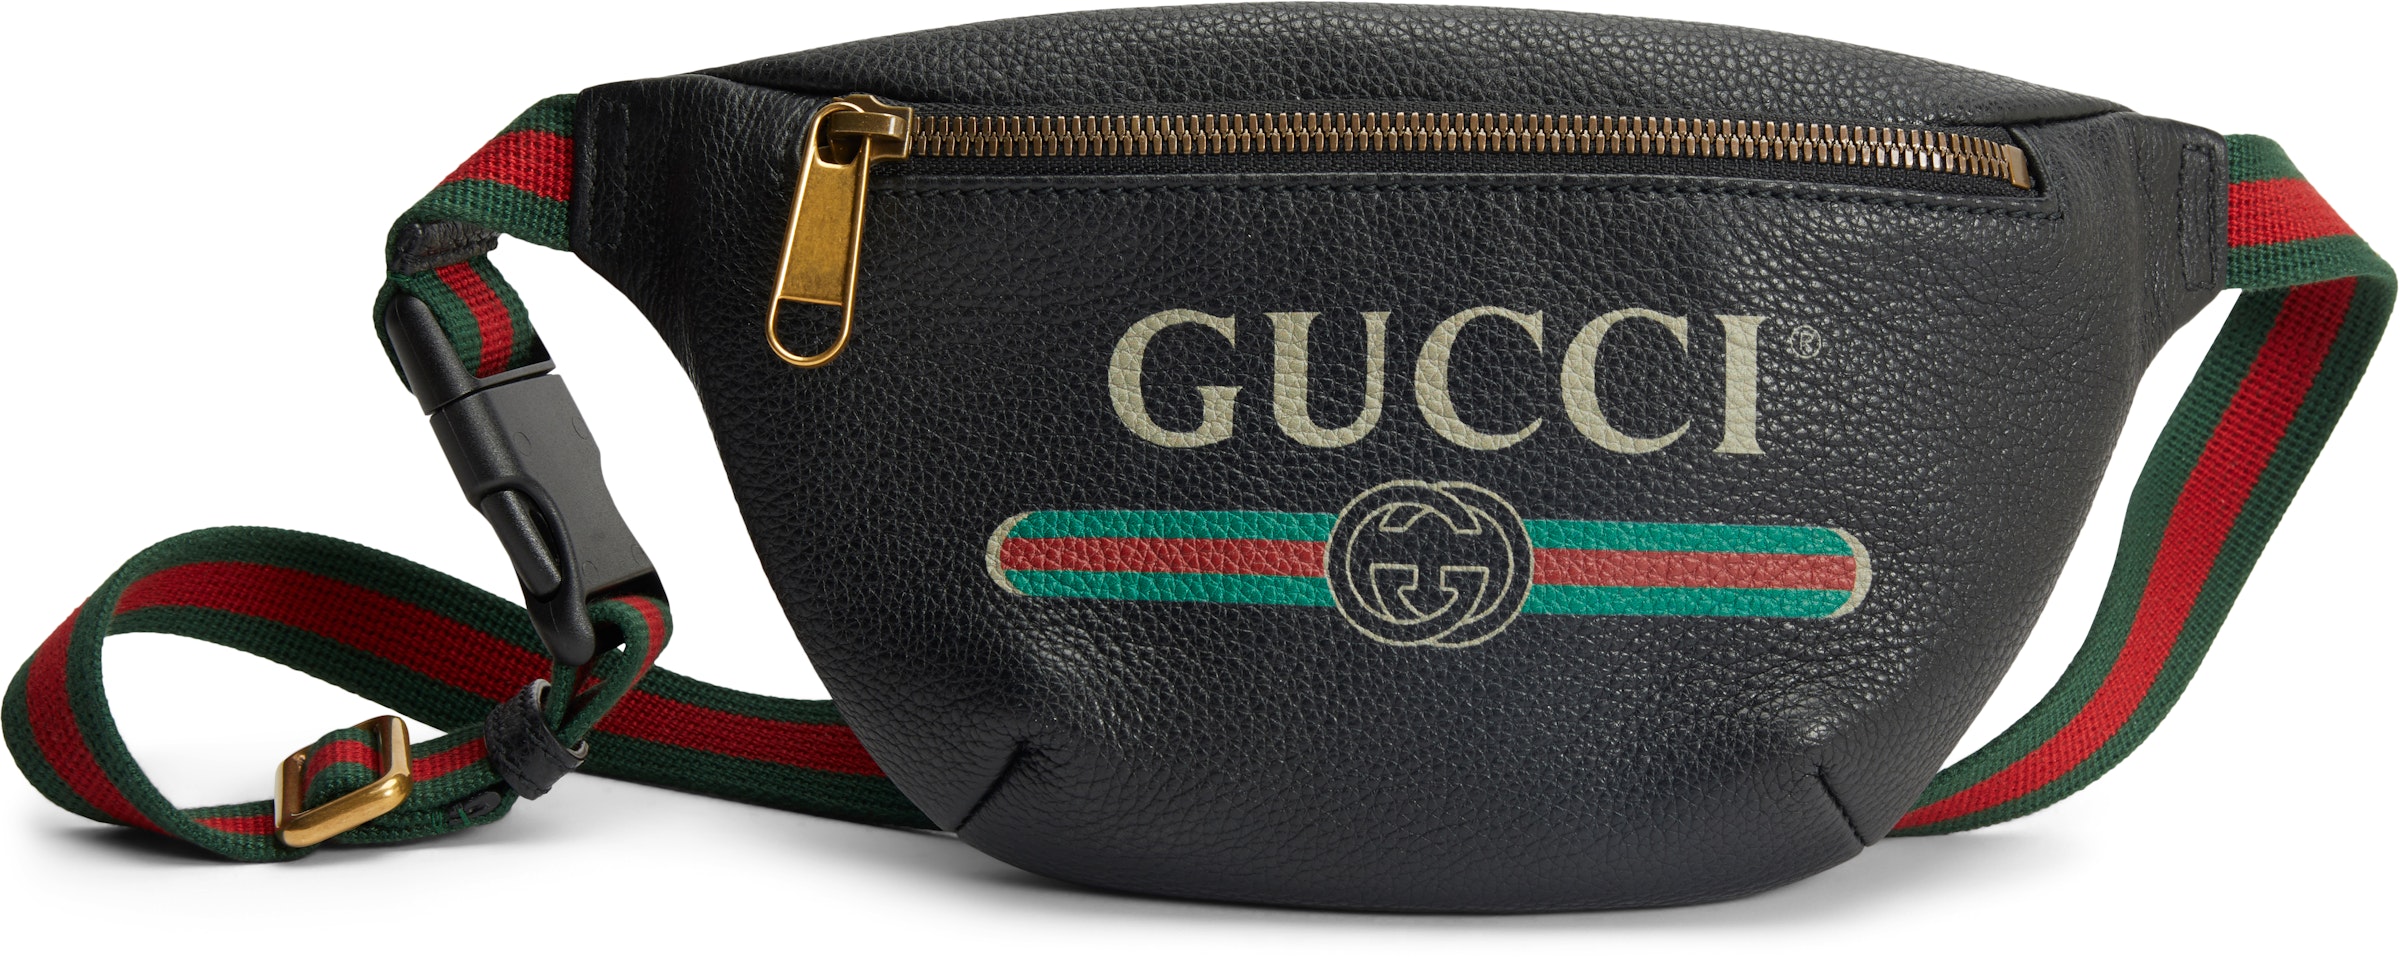 Træts webspindel I stor skala dårligt Gucci Print Belt Bag Vintage Logo Small Black in Leather with Brass - US